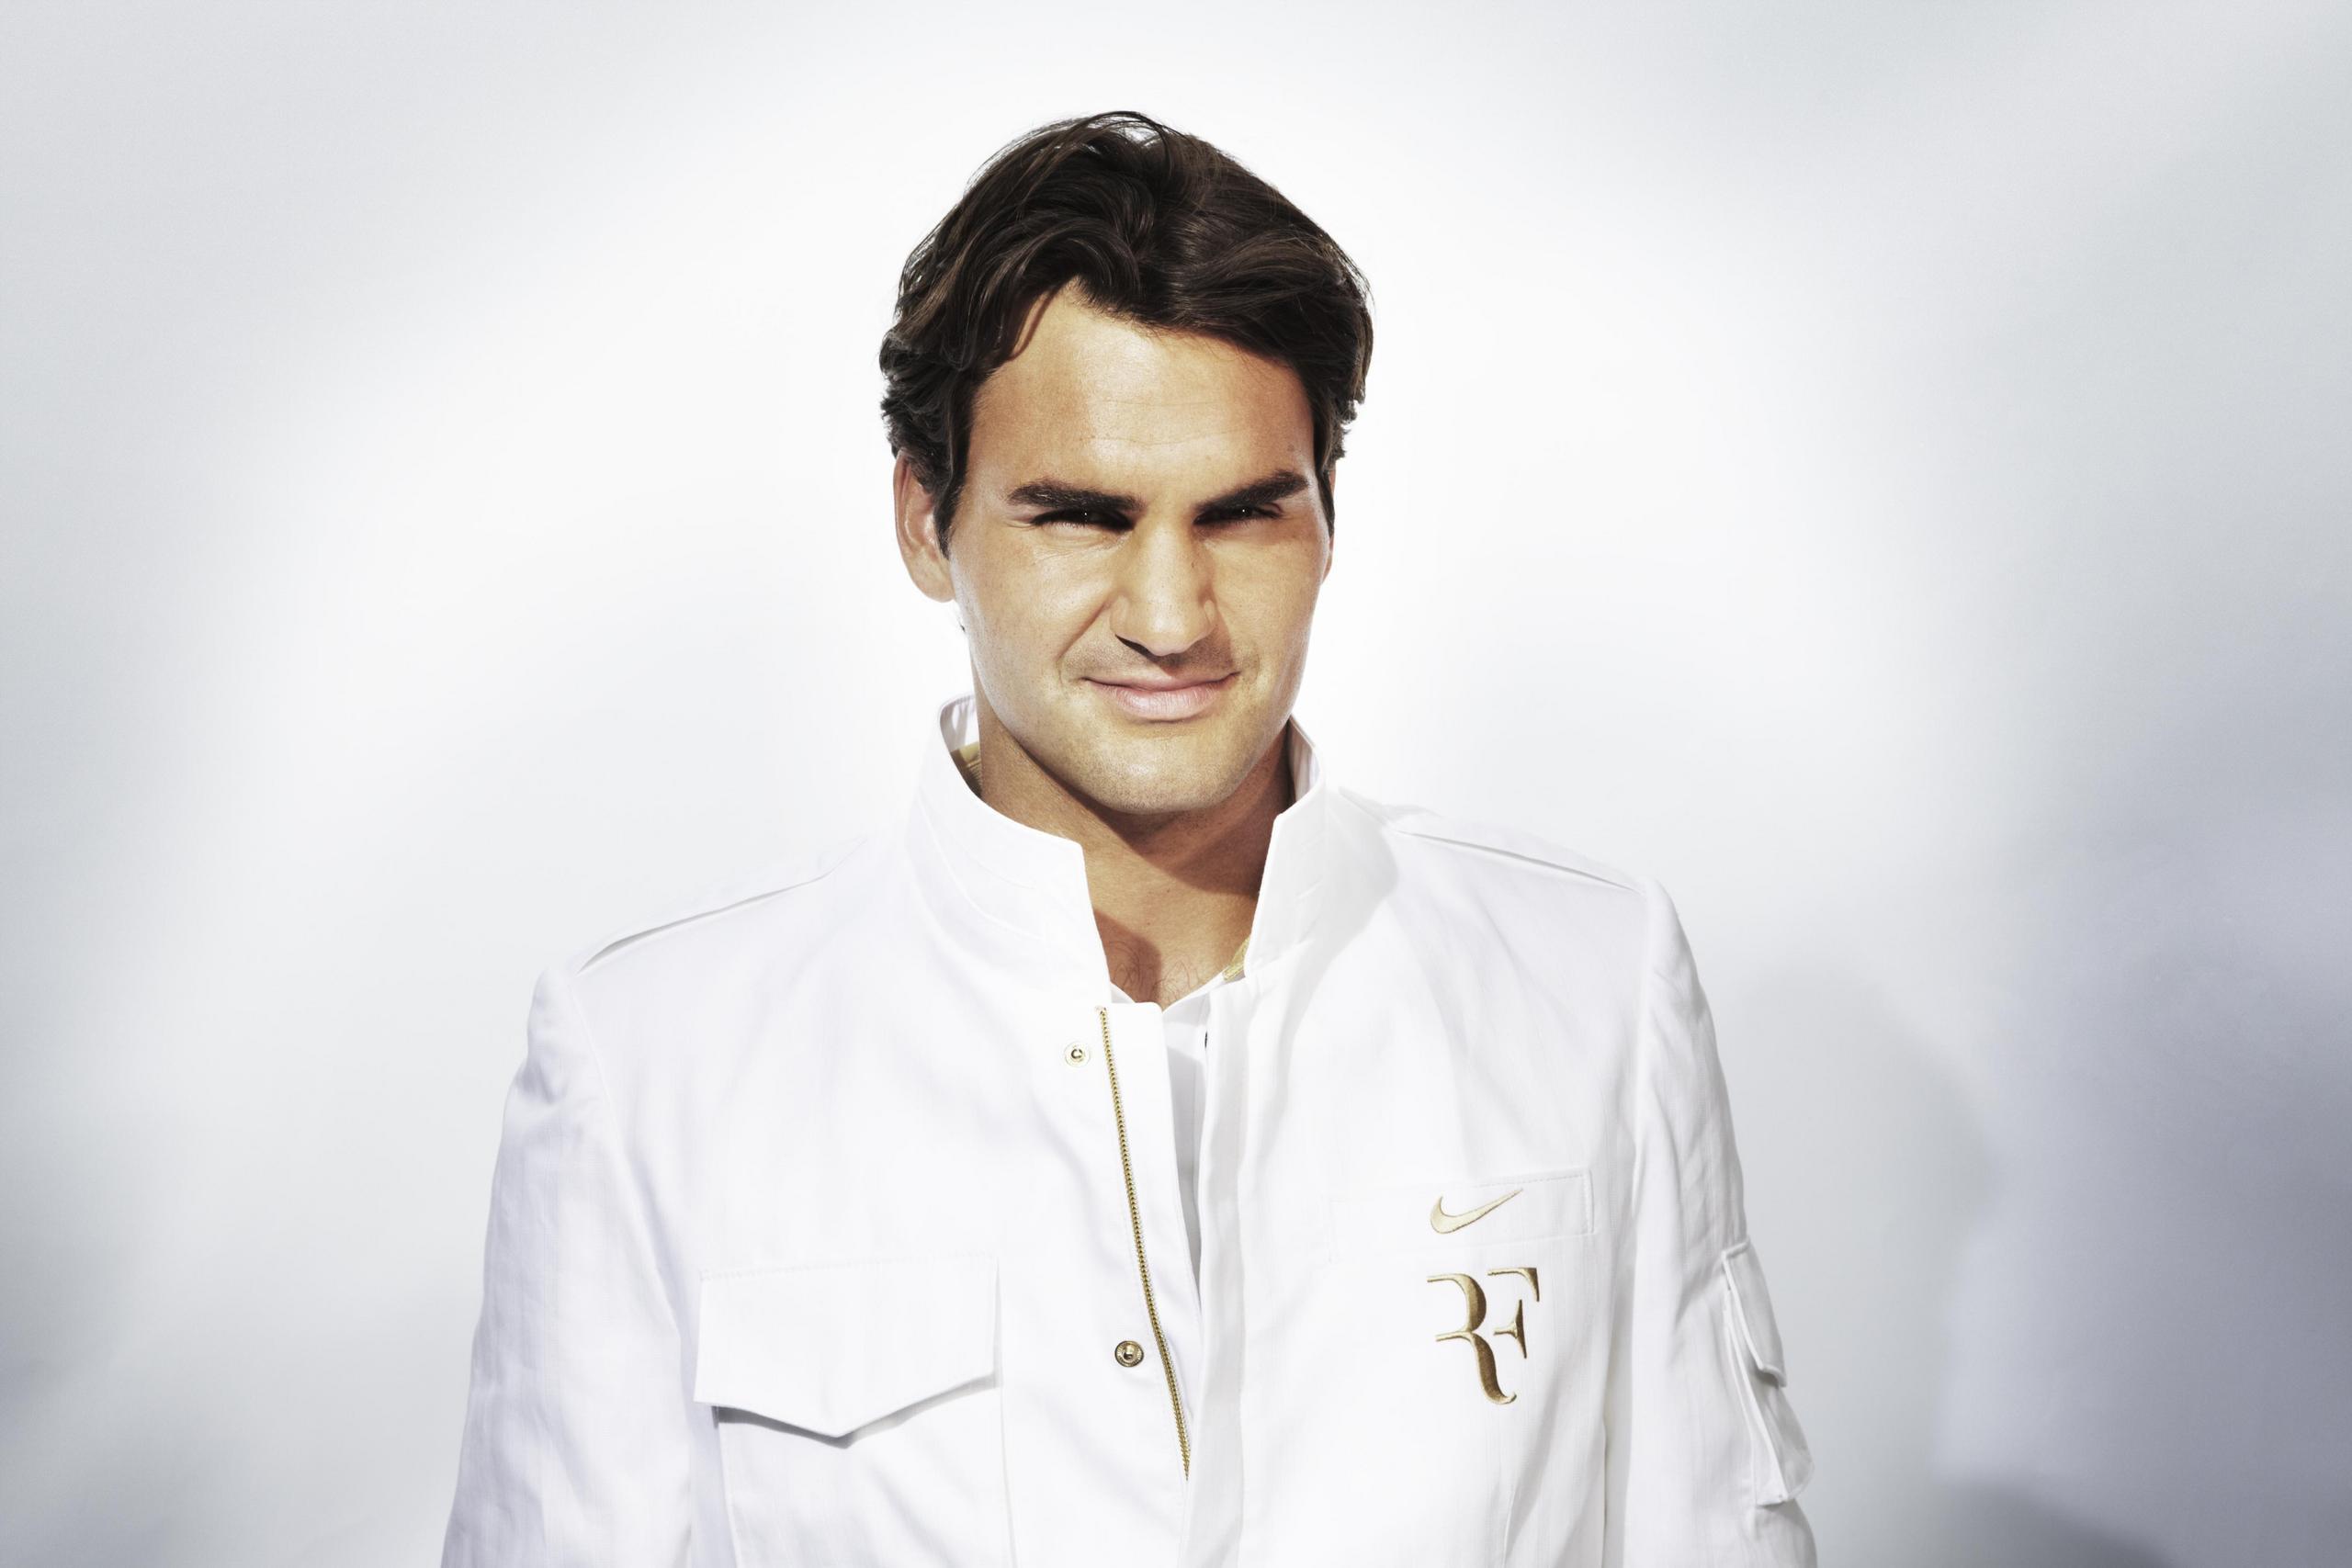 Roger Federer Wallpaper High Quality